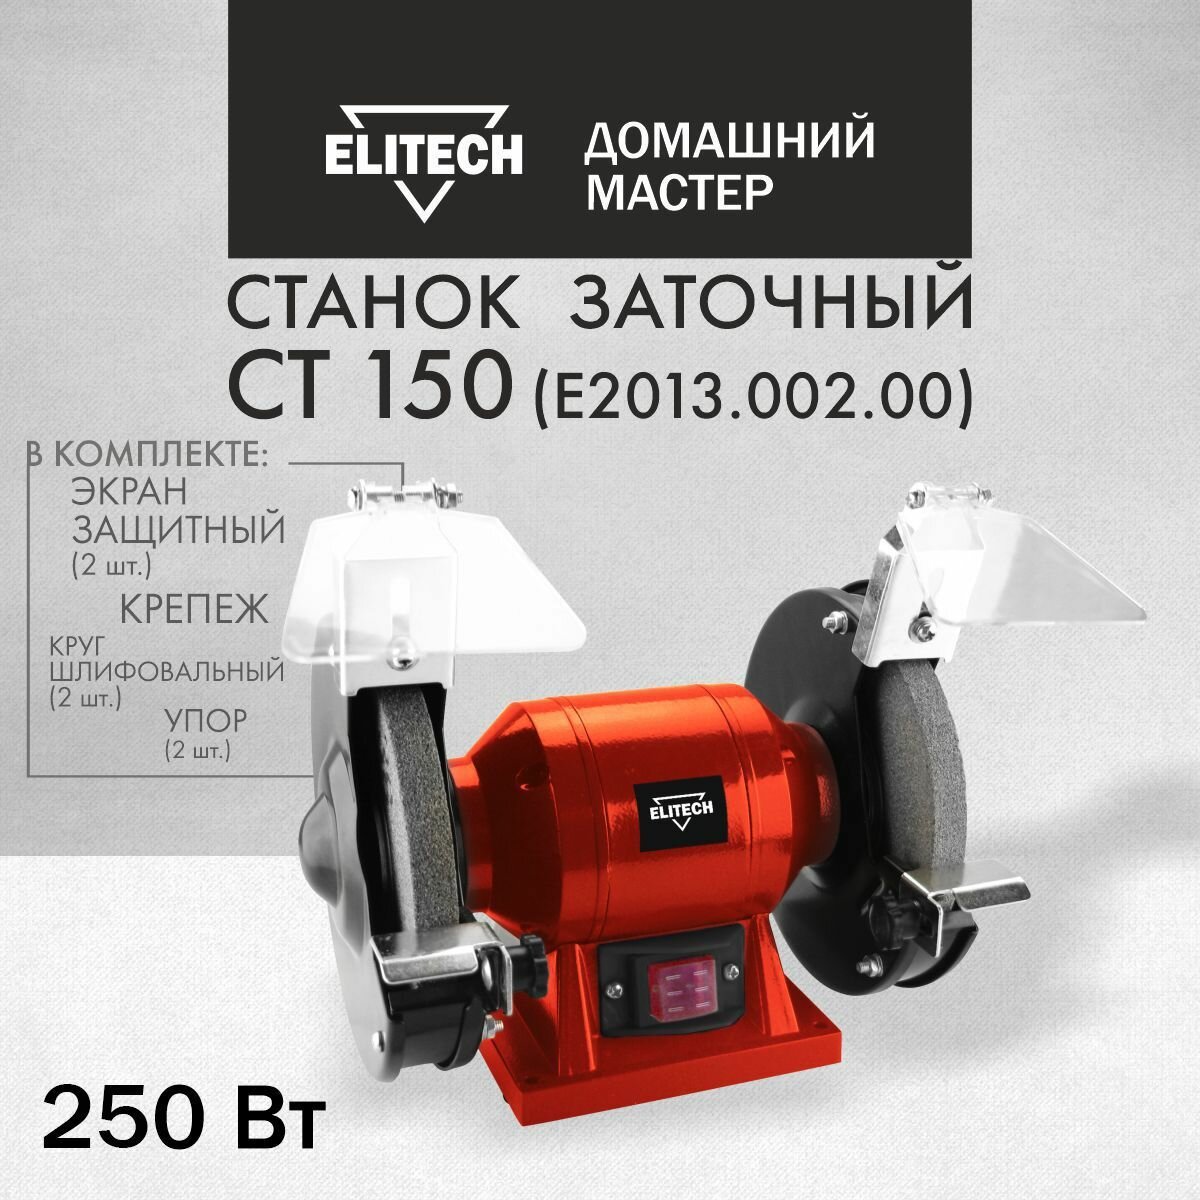 Электроточило Elitech ДМ СТ 150, 250 Вт, 2980 об/мин